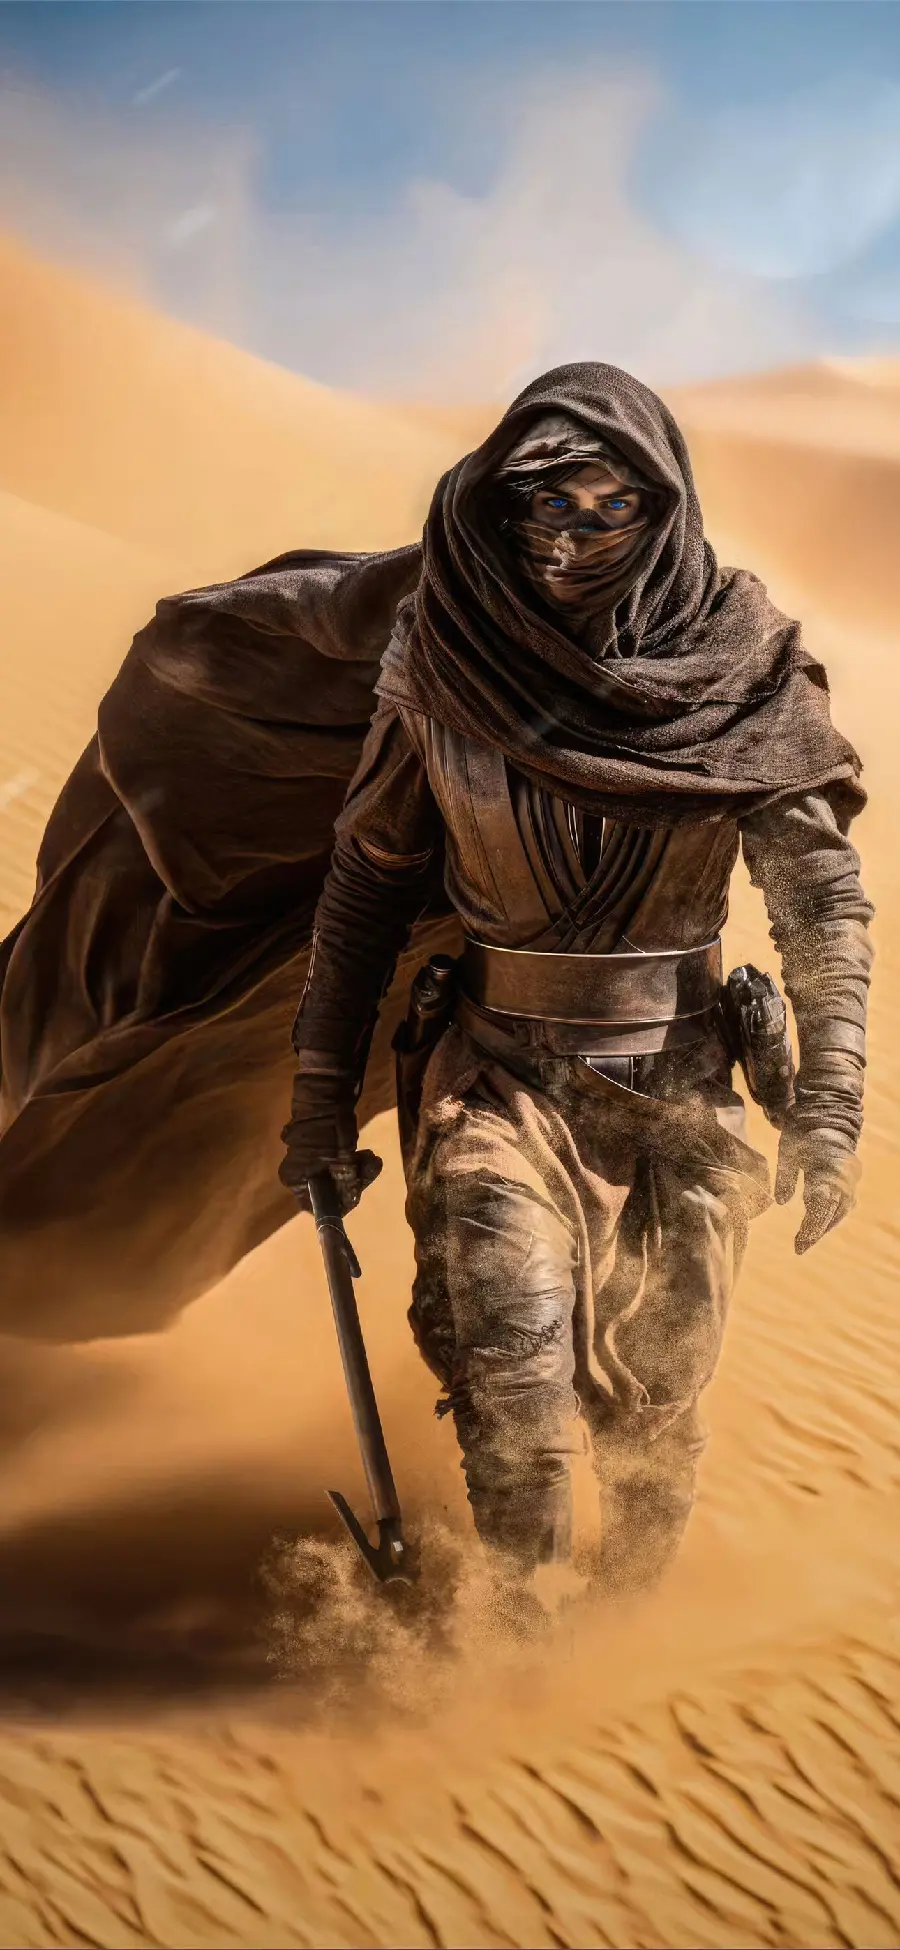 بکگراند بسیار شیک و زیبا برای گوشی از فیلم Dune قسمت 2